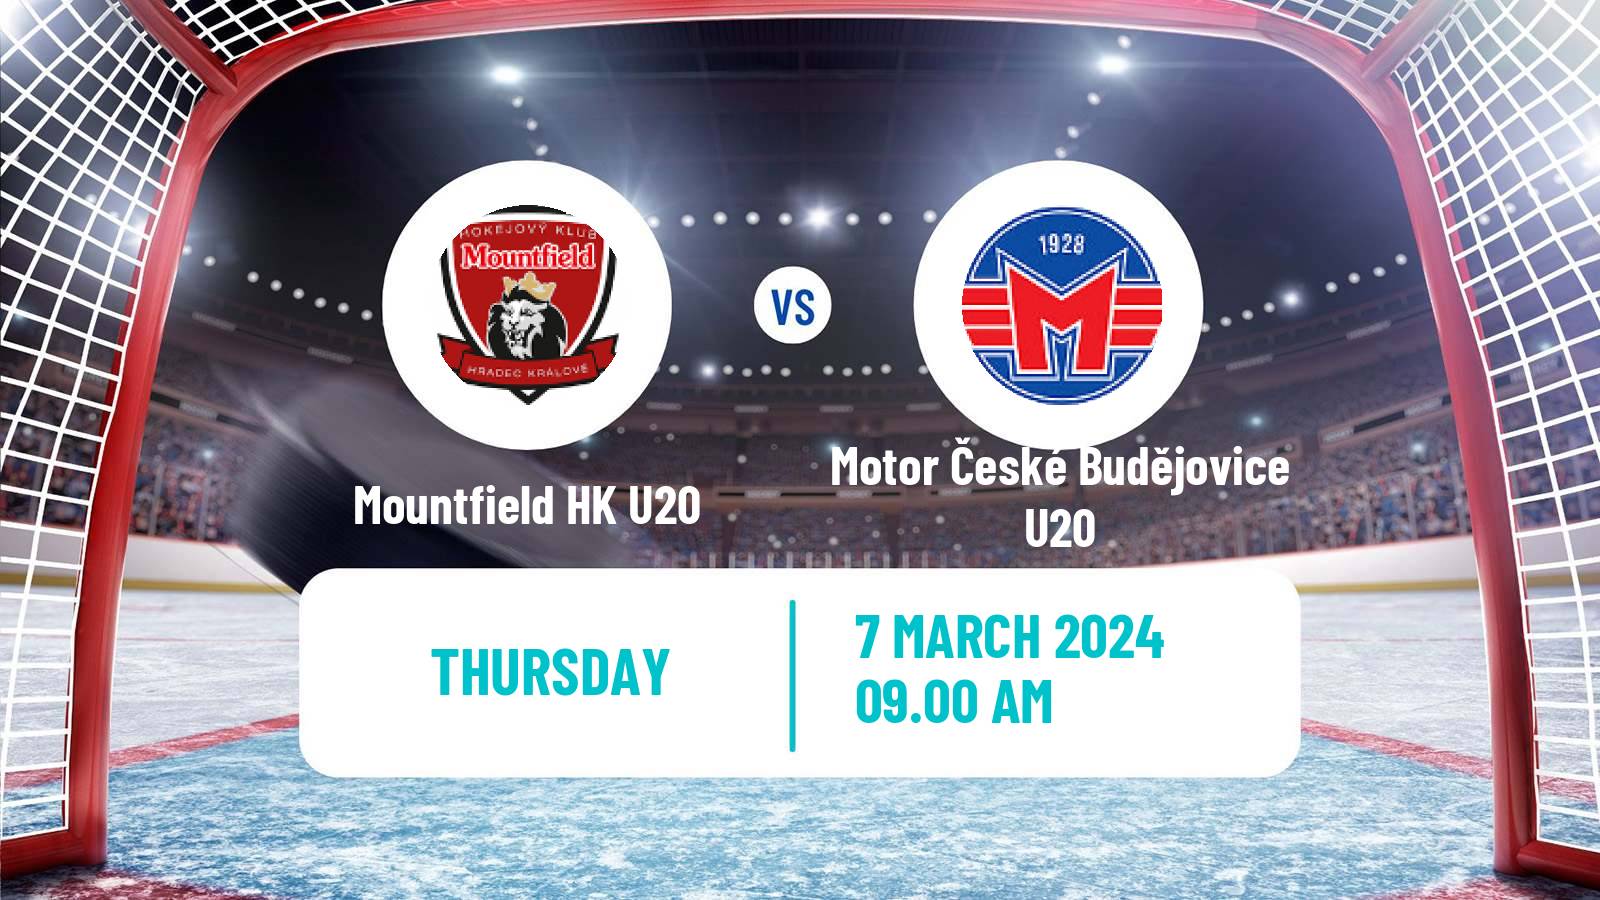 Hockey Czech ELJ Mountfield HK U20 - Motor České Budějovice U20